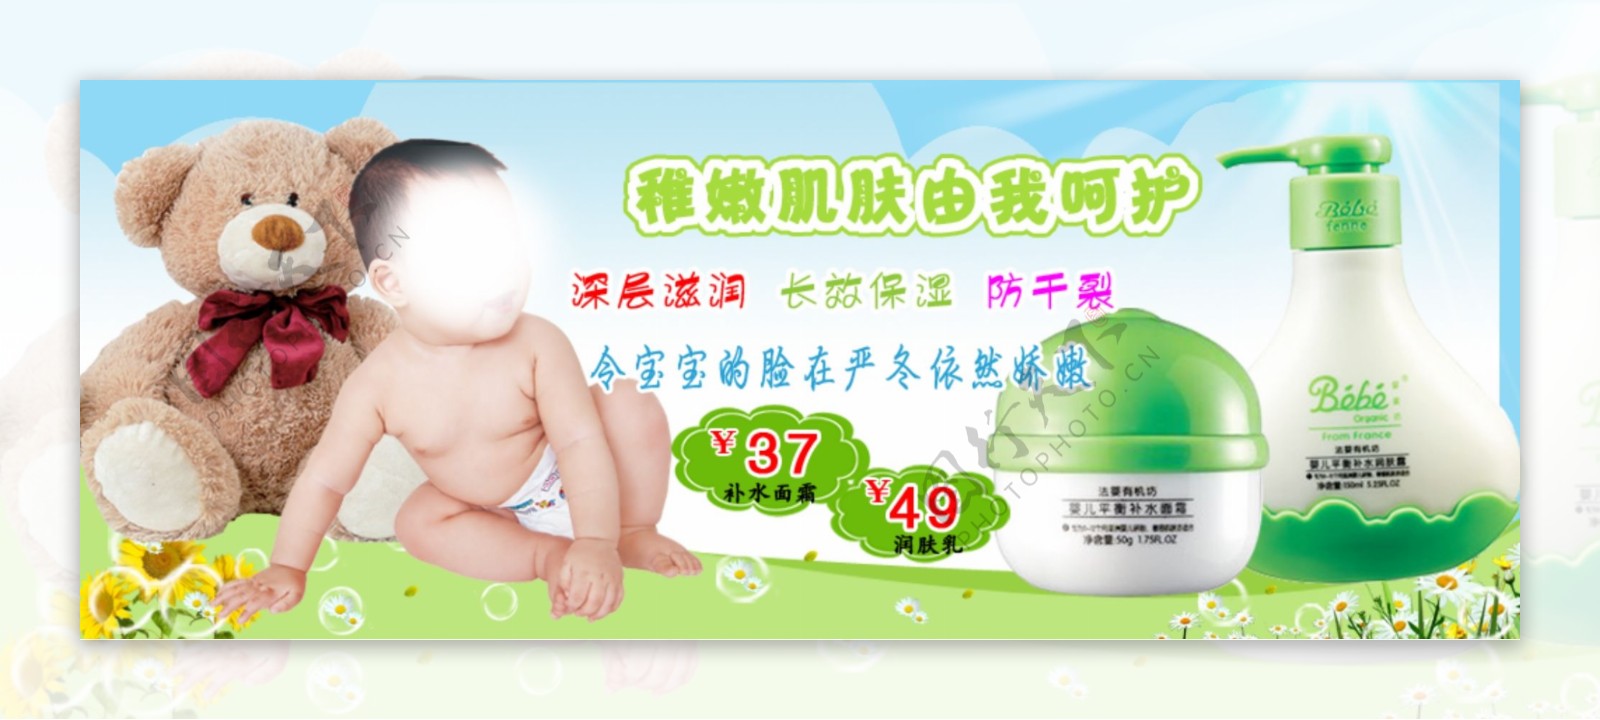 婴儿产品海报图片